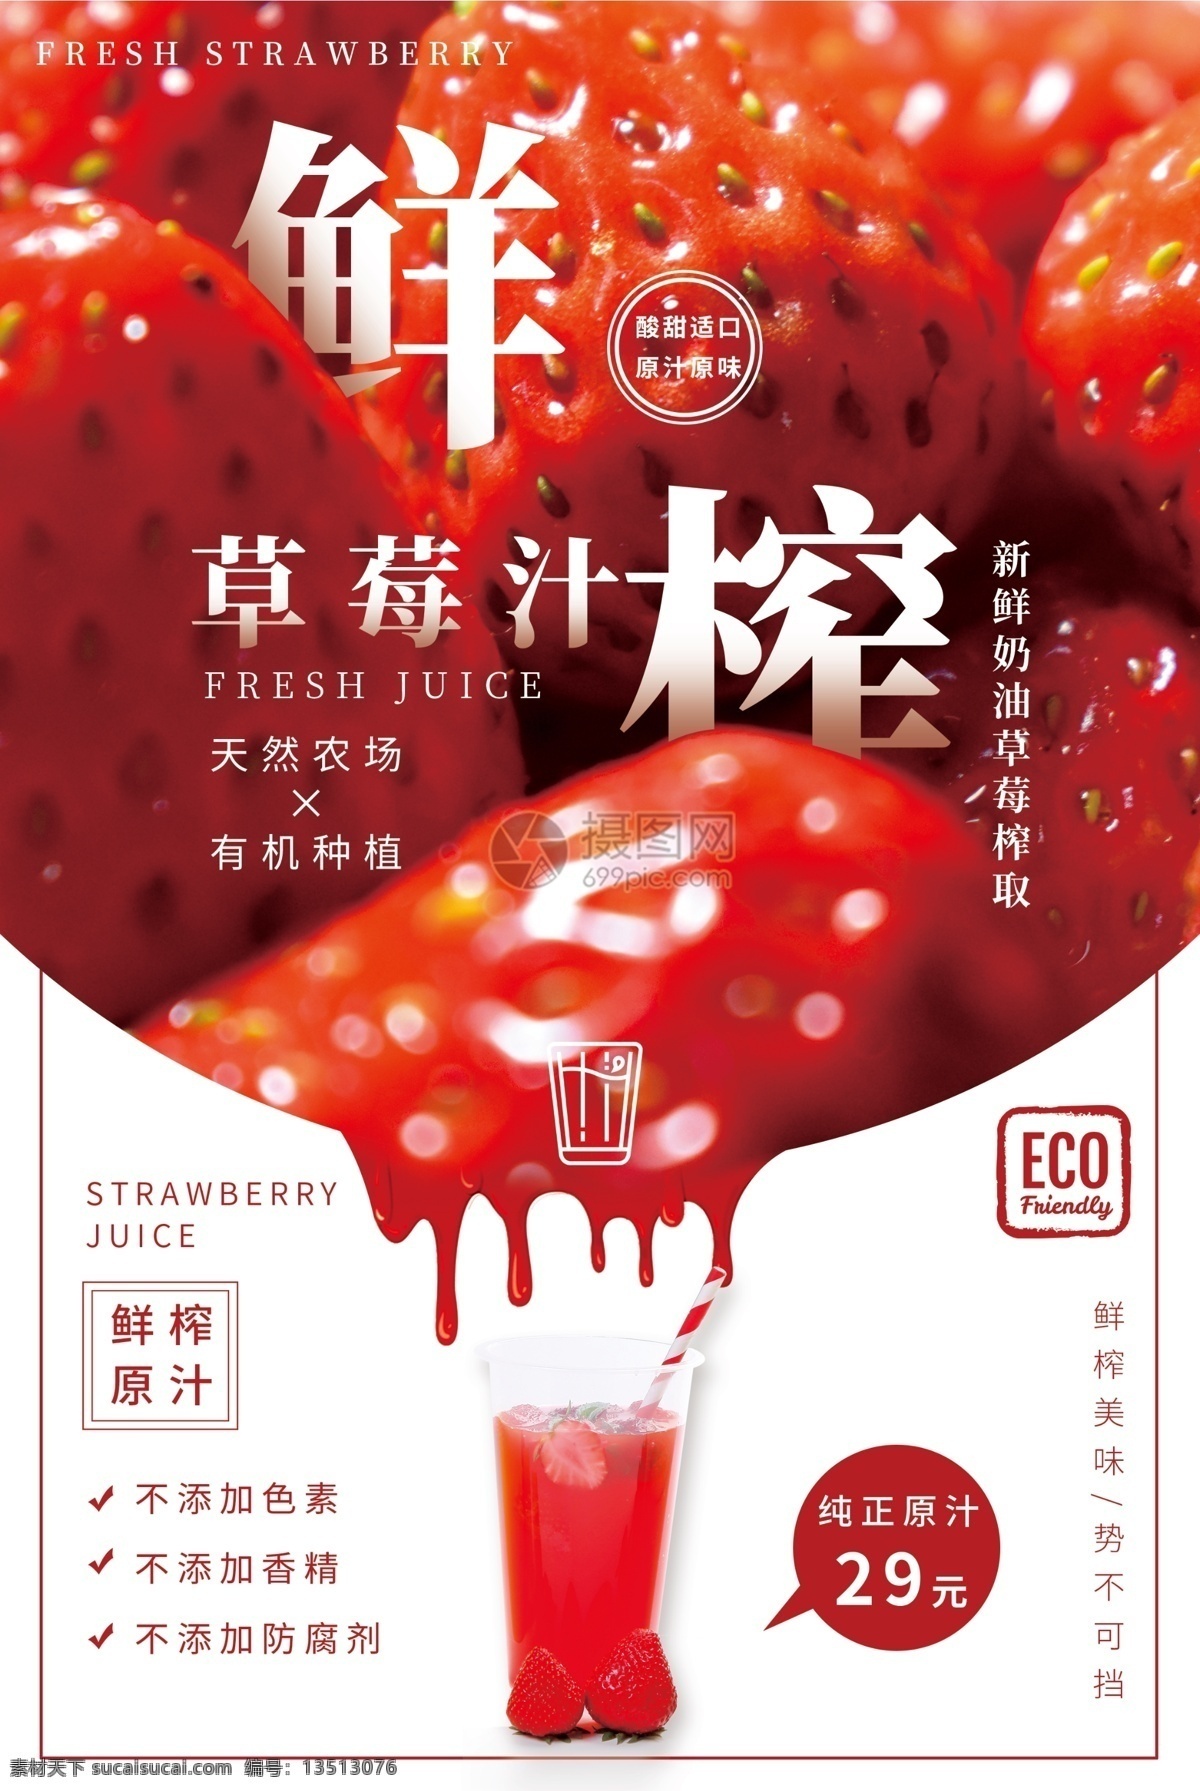 鲜榨 果汁 草莓汁 海报 鲜榨果汁 新鲜原汁 草莓 水果汁 鲜果 草莓果汁 榨取 新鲜水果 果汁海报 水果海报 草莓海报